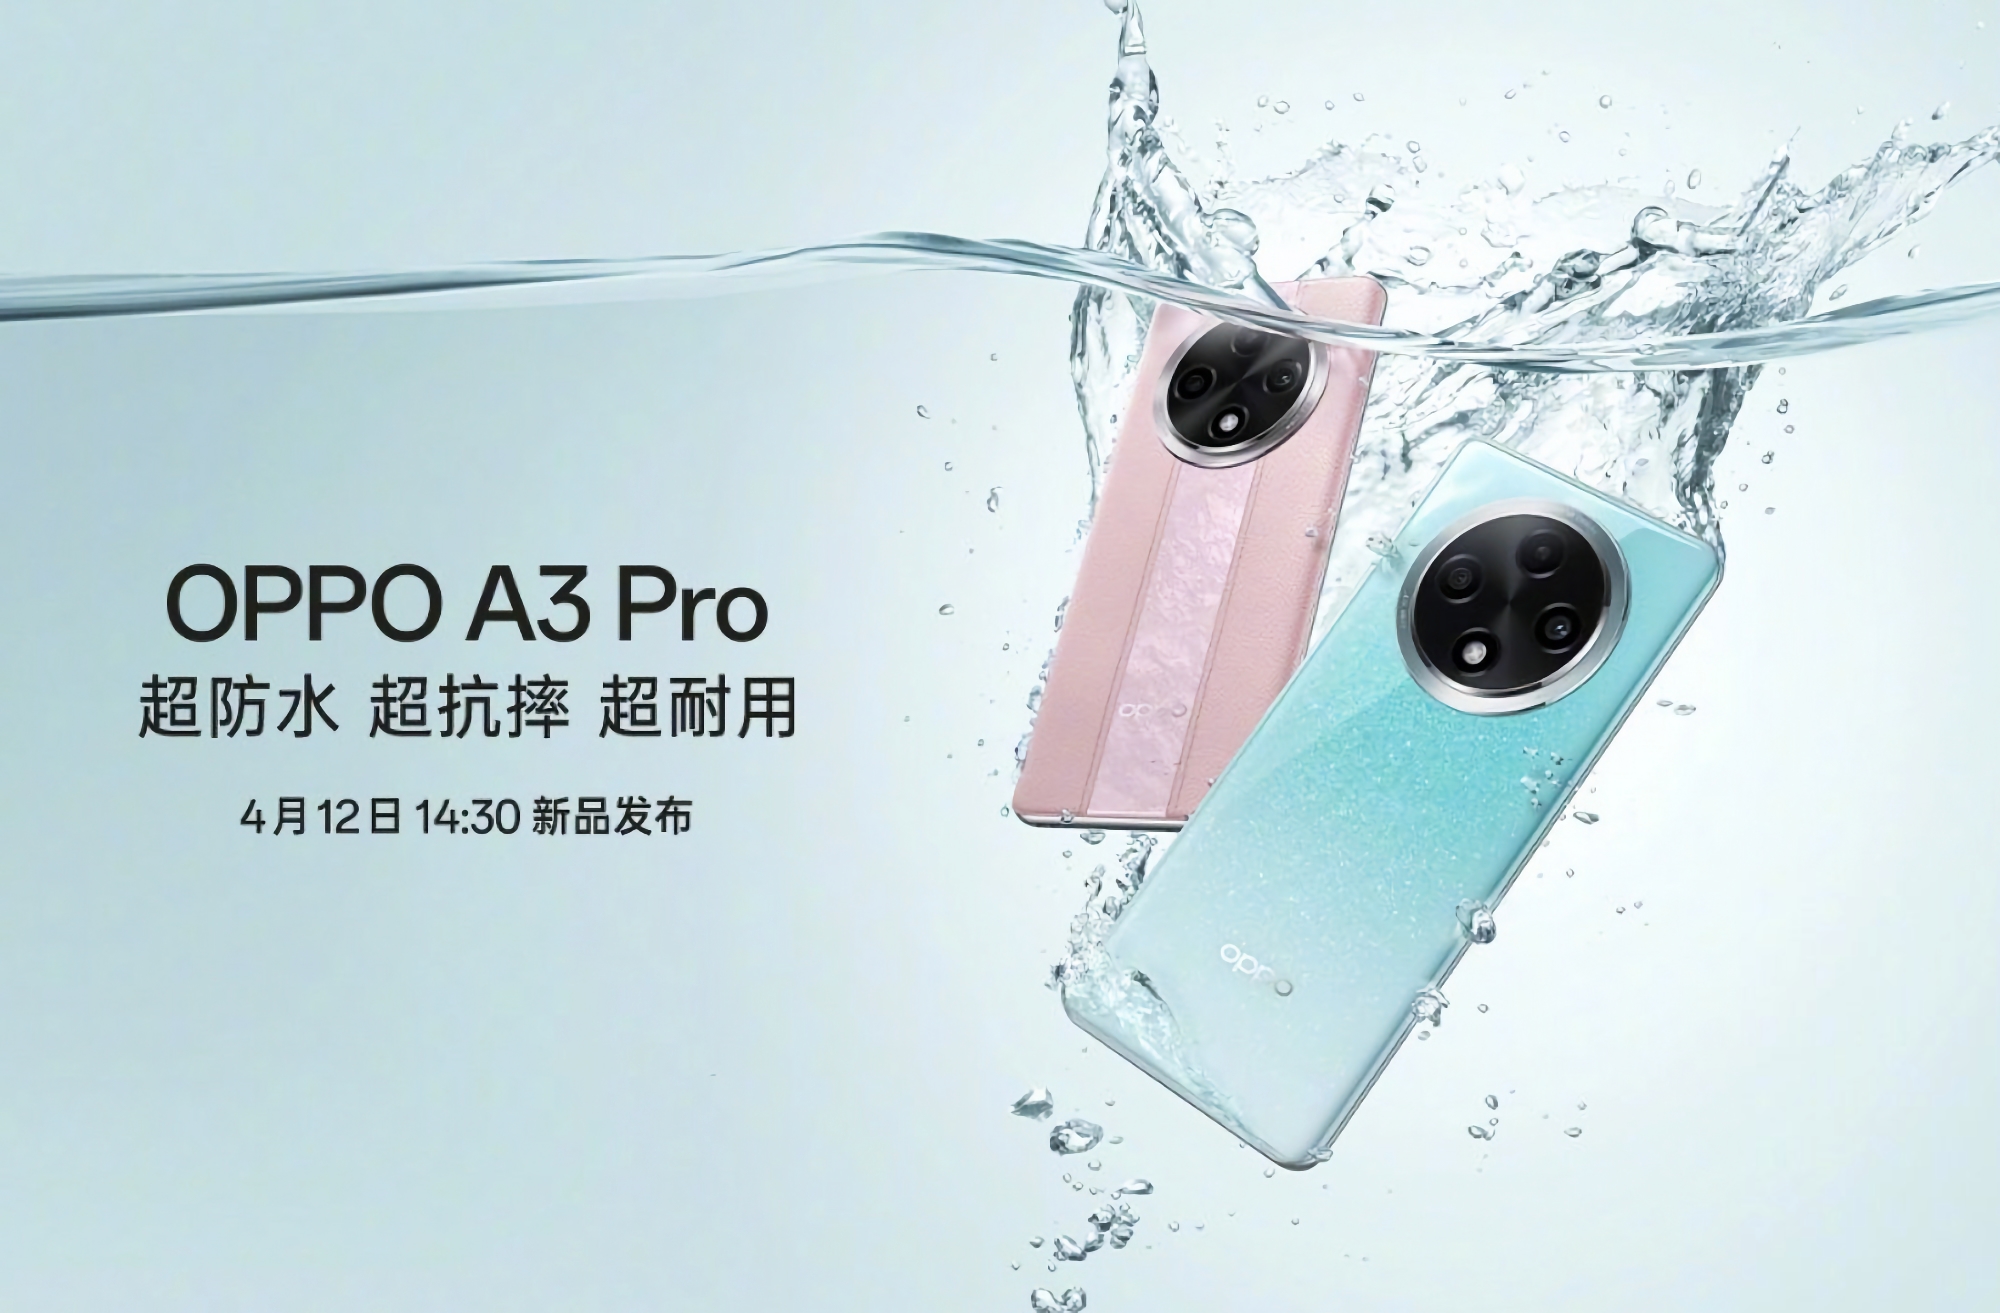 Es ist offiziell: Das OPPO A3 Pro wird am 12. April auf den Markt kommen